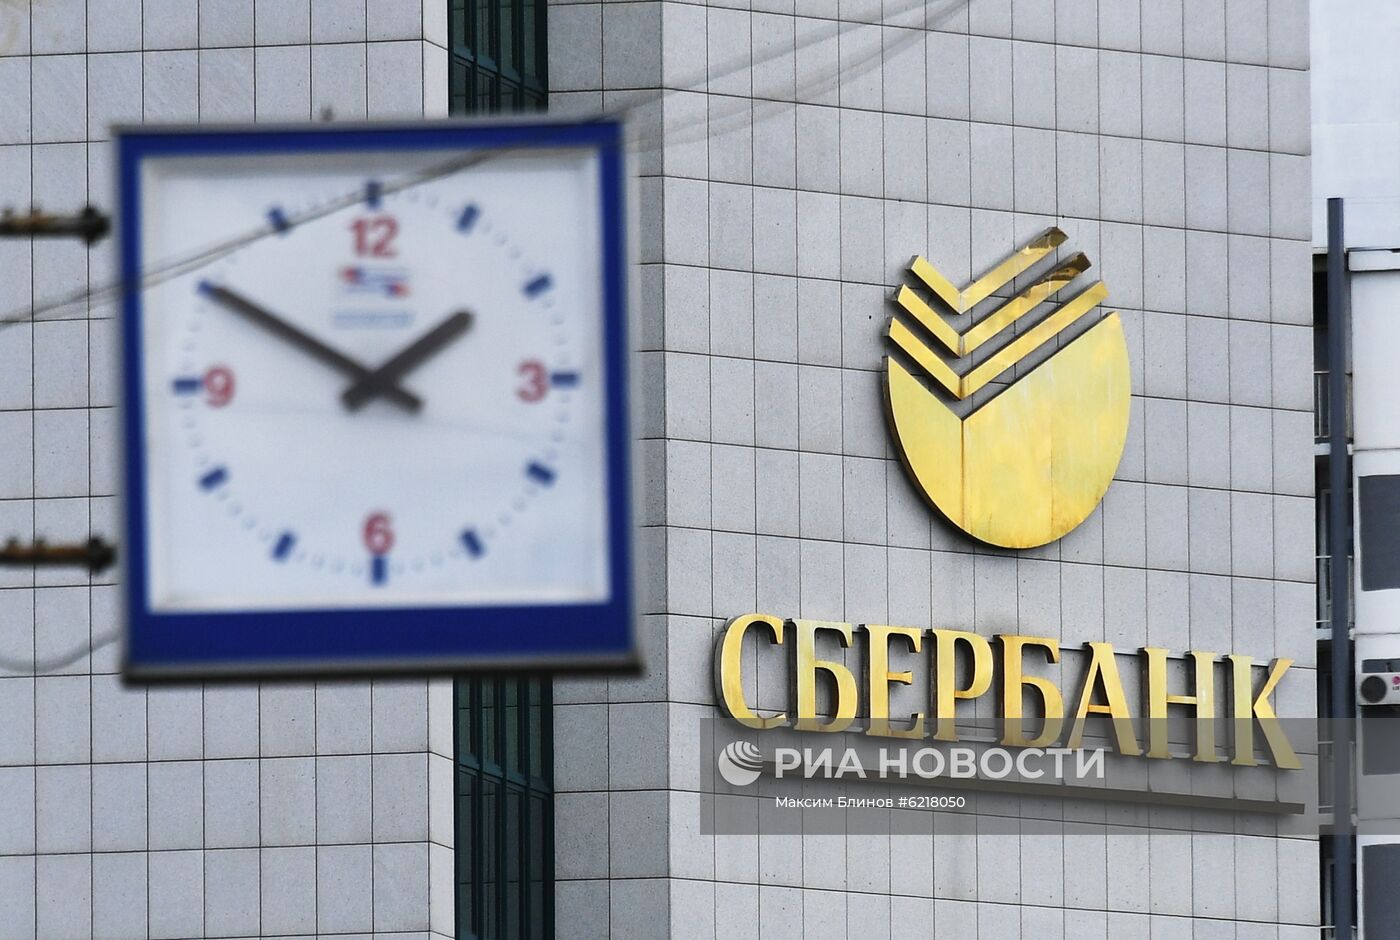 Правительство РФ выкупило у ЦБ пакет акций Сбербанка